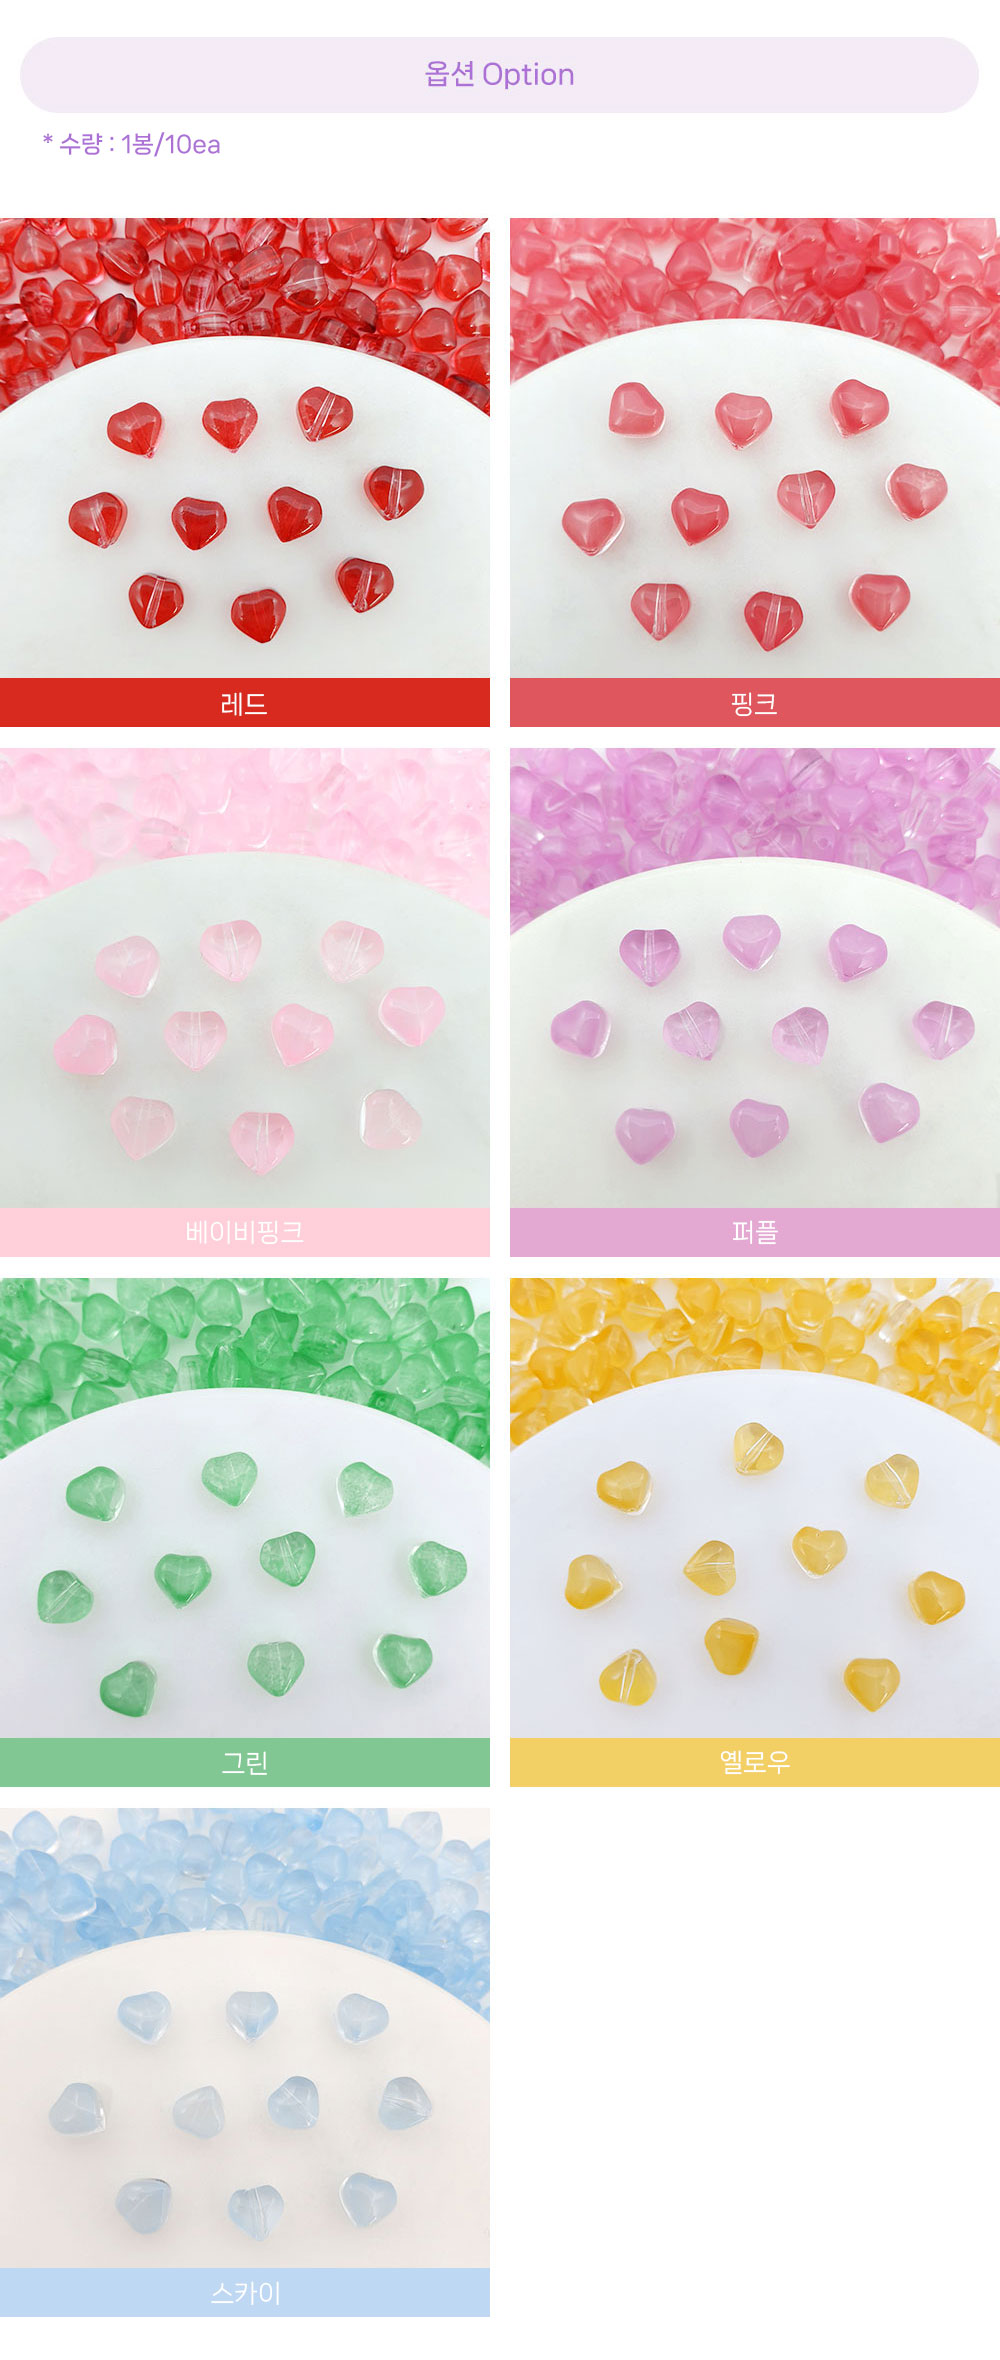 컬러글라스의 하트 비즈의 옵션 색상은 레드,핑크,베이비핑크,퍼플,그린,옐로우,스카이입니다. 색상별로 1봉에 10개씩들어있습니다.